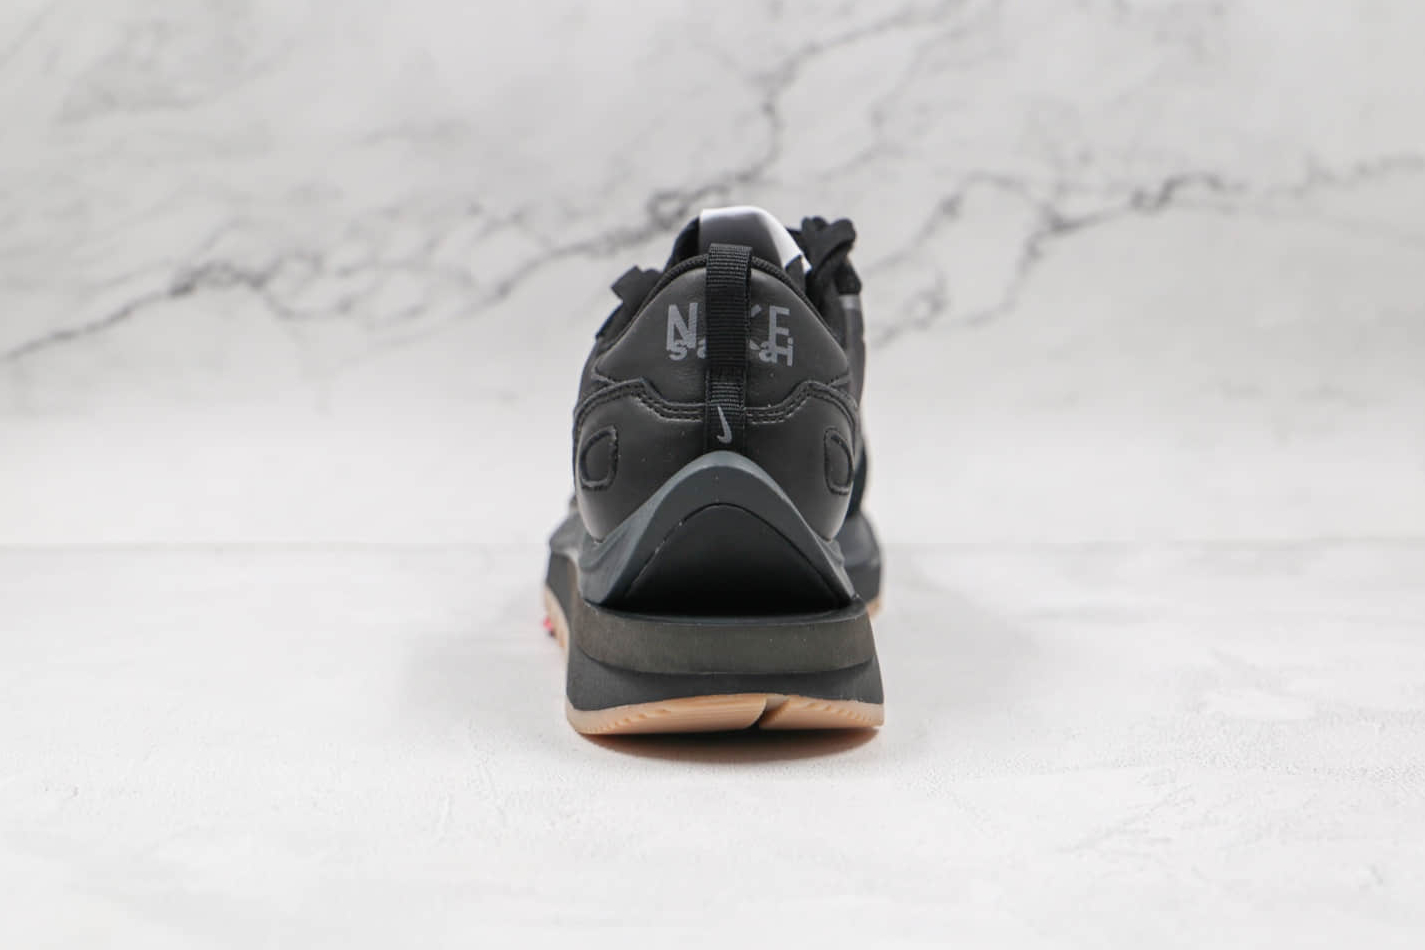 Nike Sacai x VaporWaffle 'Black Gum' DD1875-001 - Stylish Collaboration with Sleek Design and Iconic Colorway